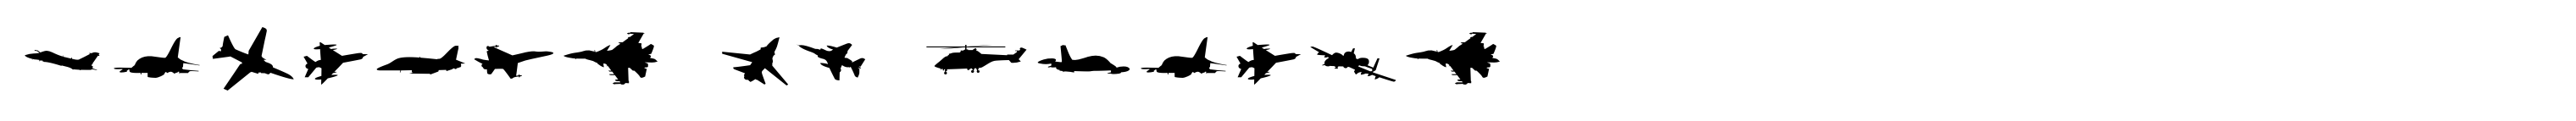 Wingbat OT-Flight